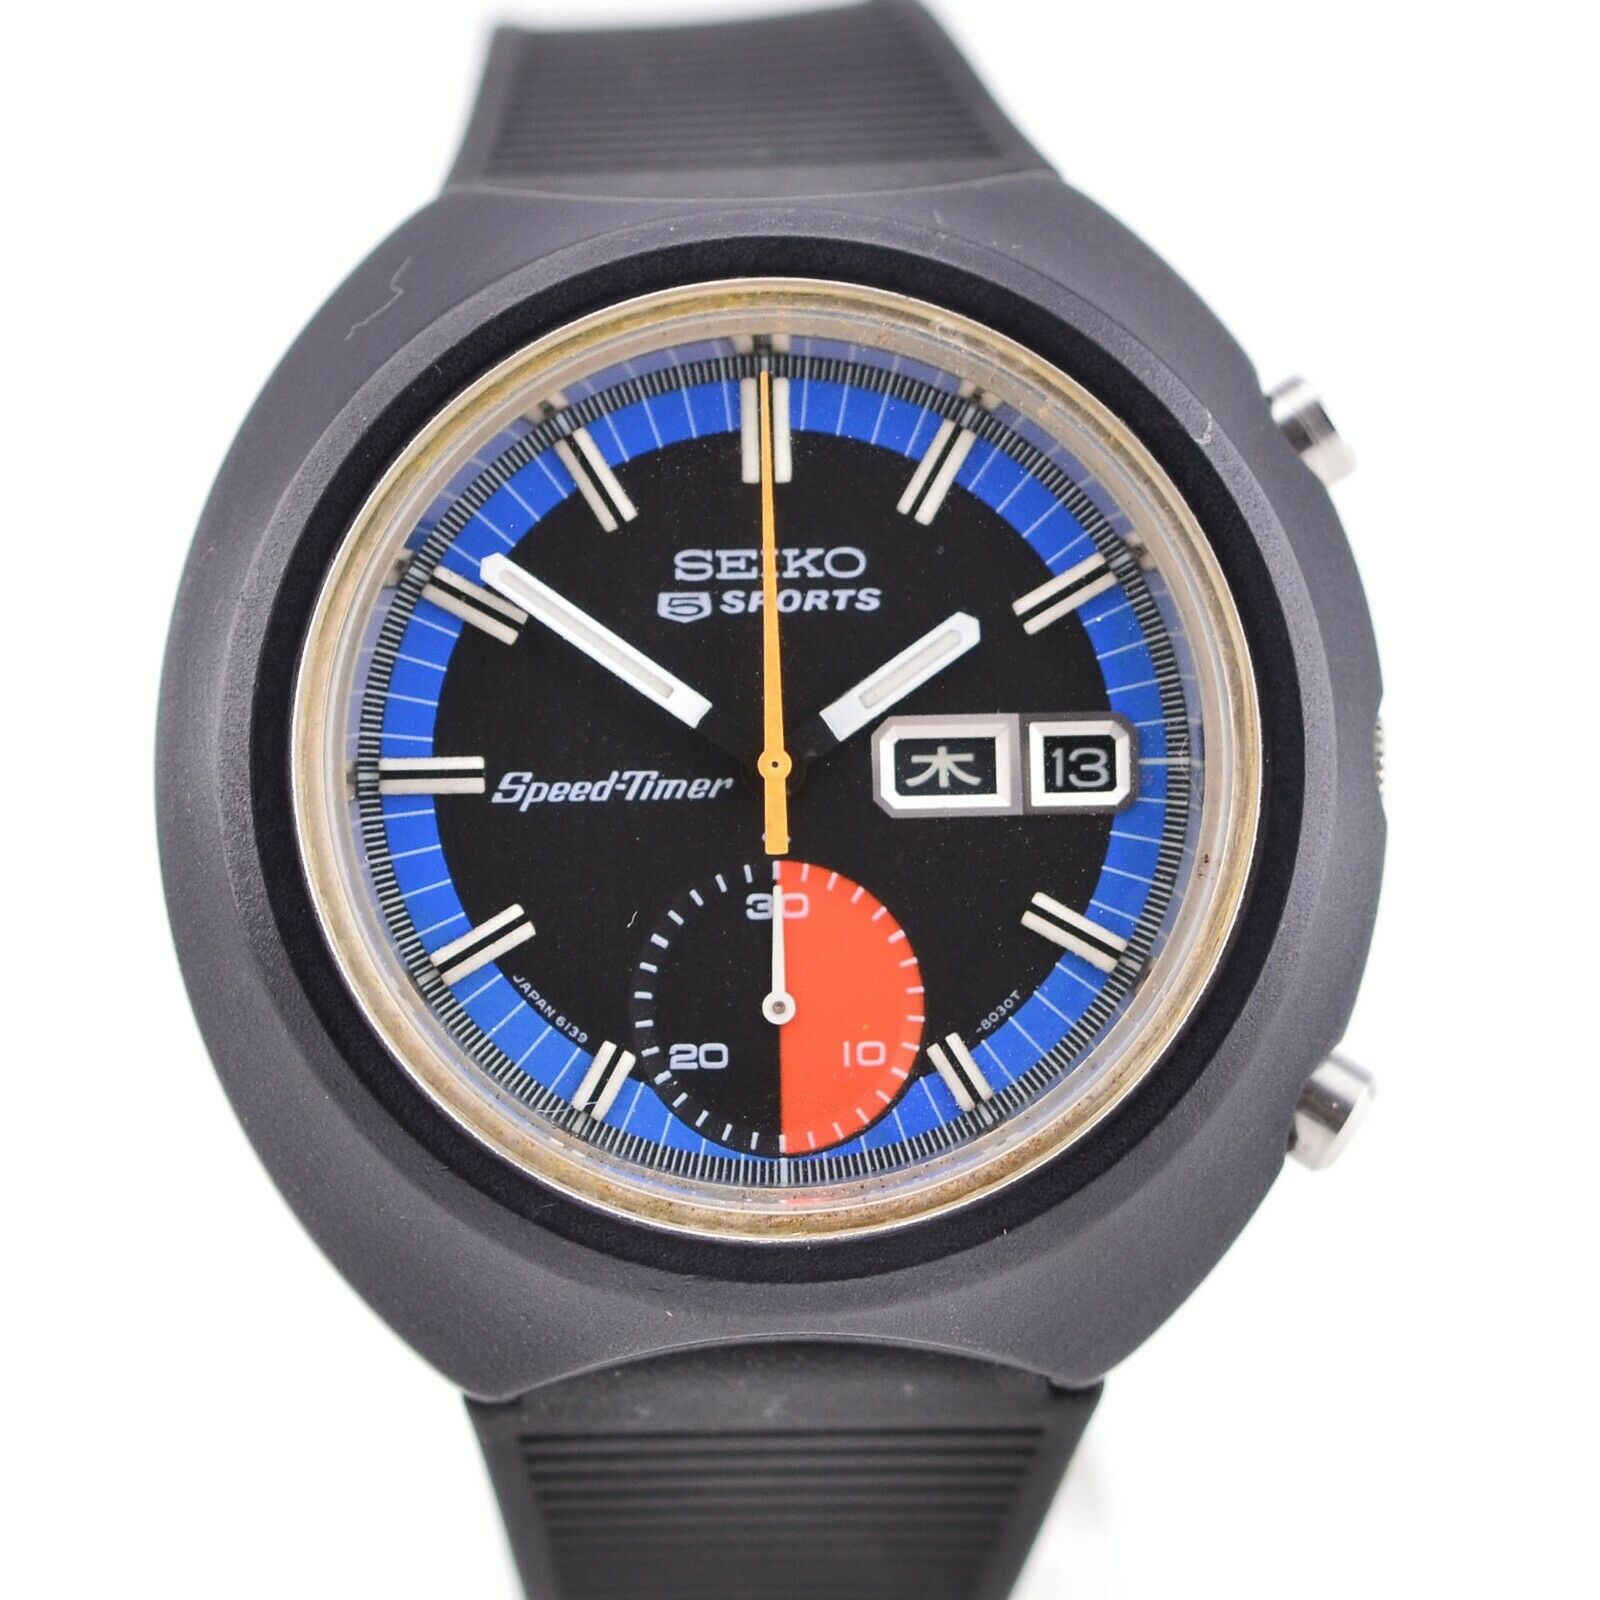 Seiko 5 Speed Timer (6139-8010) Market Price | WatchCharts